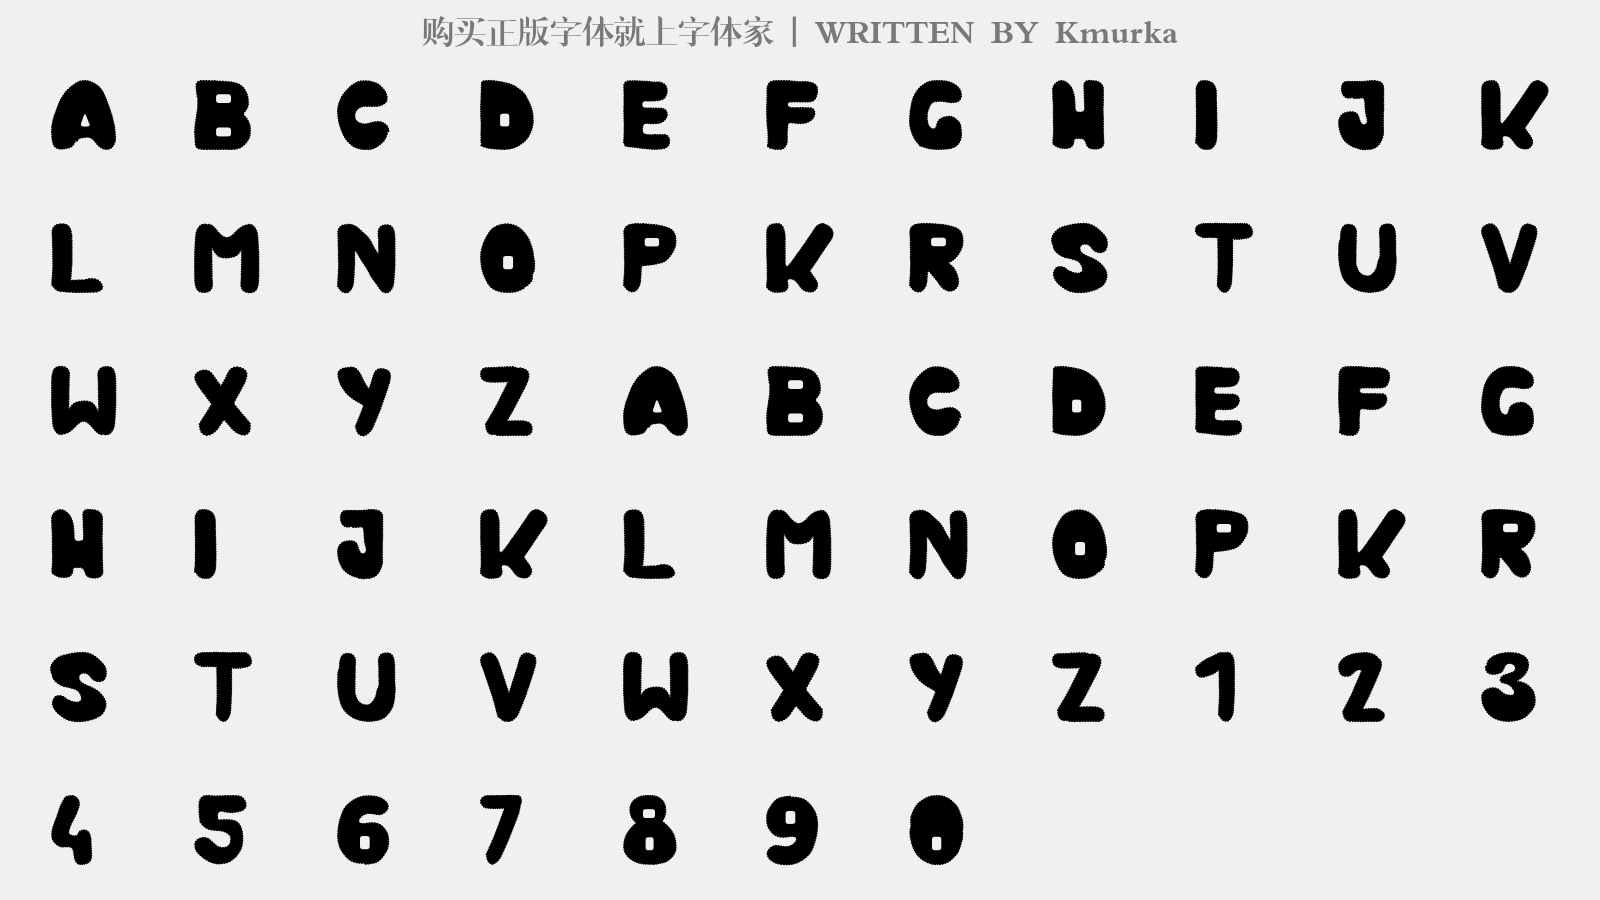 Kmurka - 大写字母/小写字母/数字